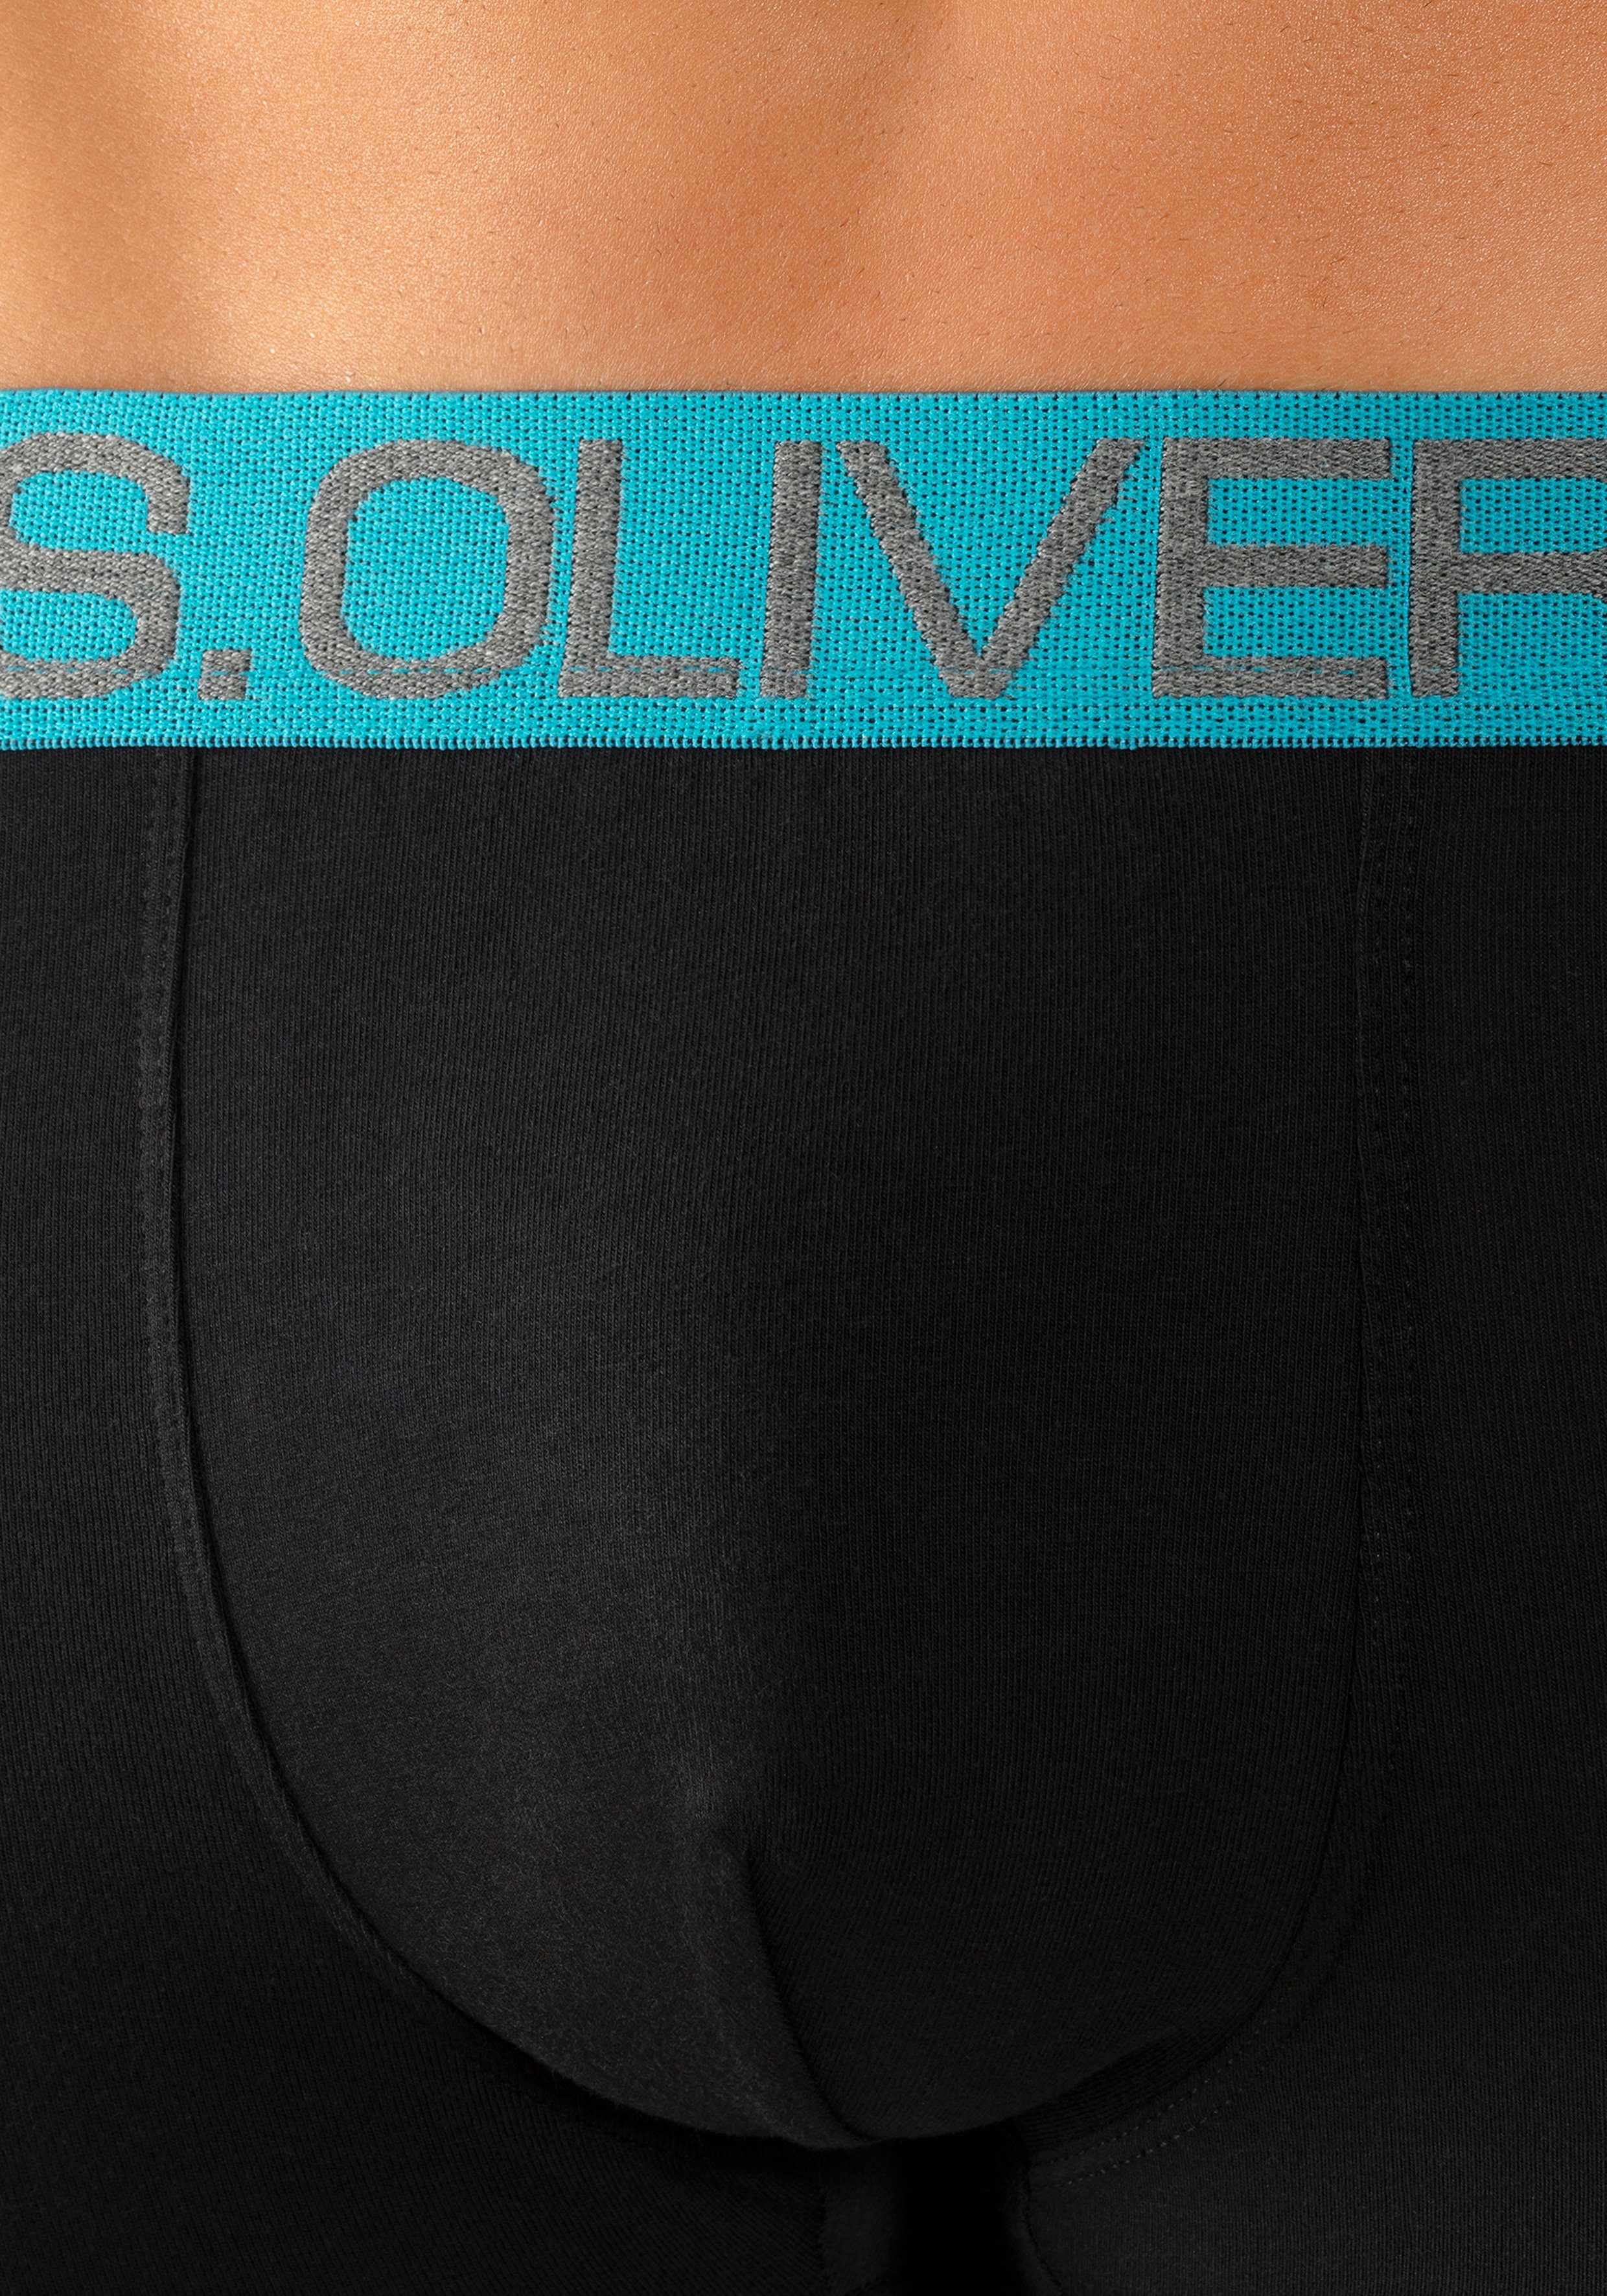 s.Oliver Boxershorts (Packung, 4-St) in kontrastfarbenem Webbund Hipster-Form schwarz-hellblau, schwarz-royalblau mit schwarz-marine, schwarz-türkis